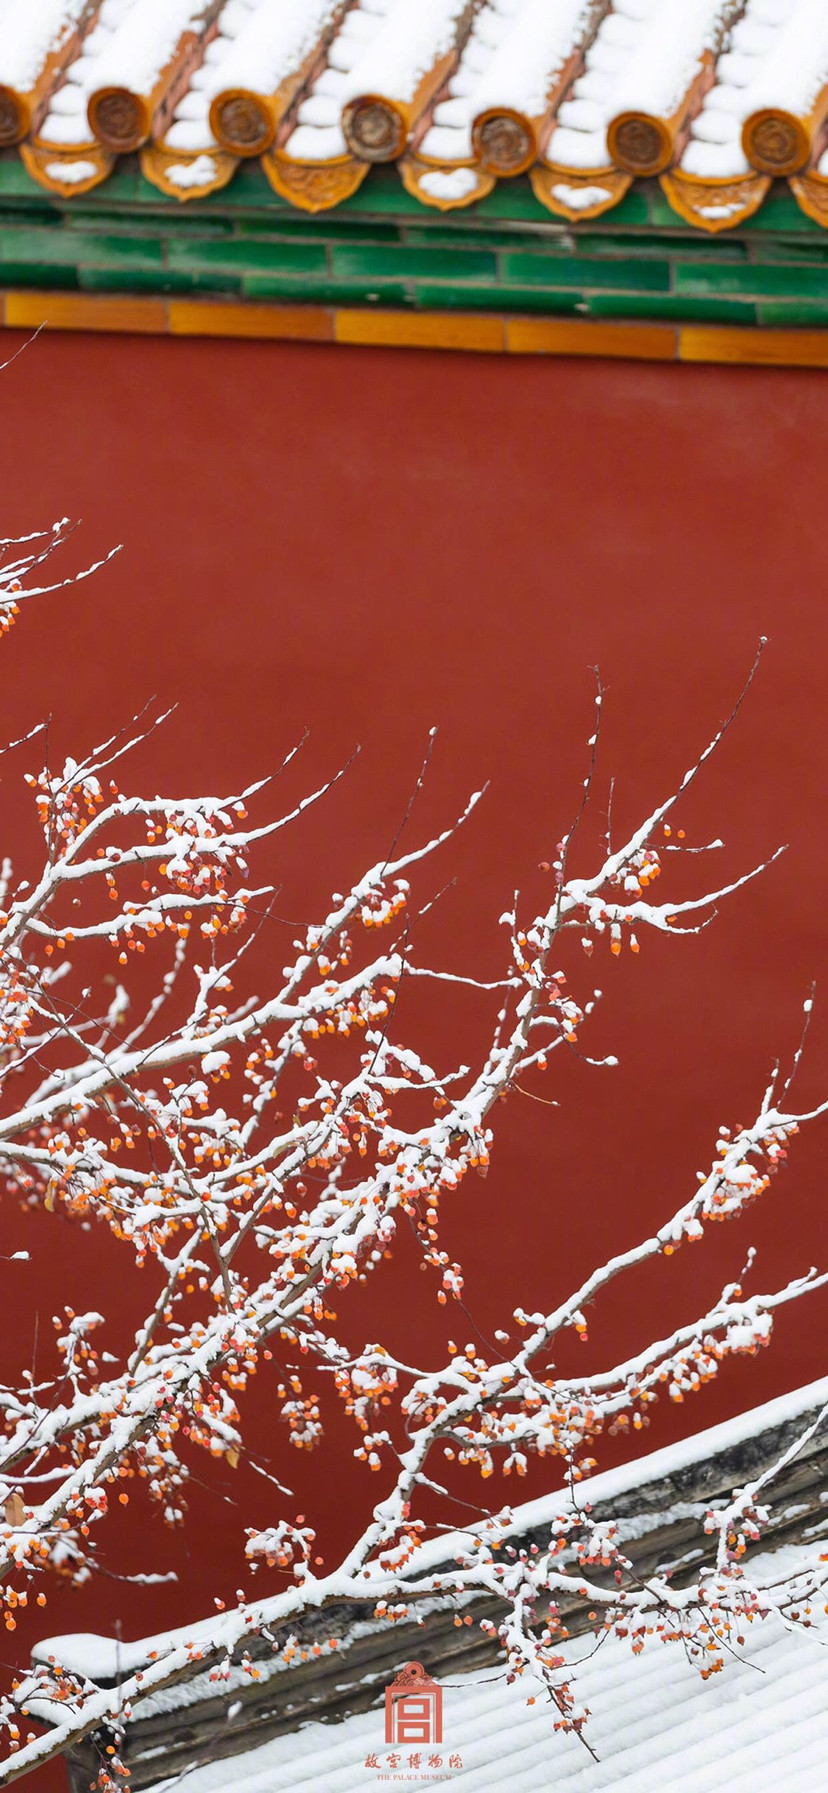 故宫雪景最美的是屋檐上的积雪红色大气磅礴的宫墙